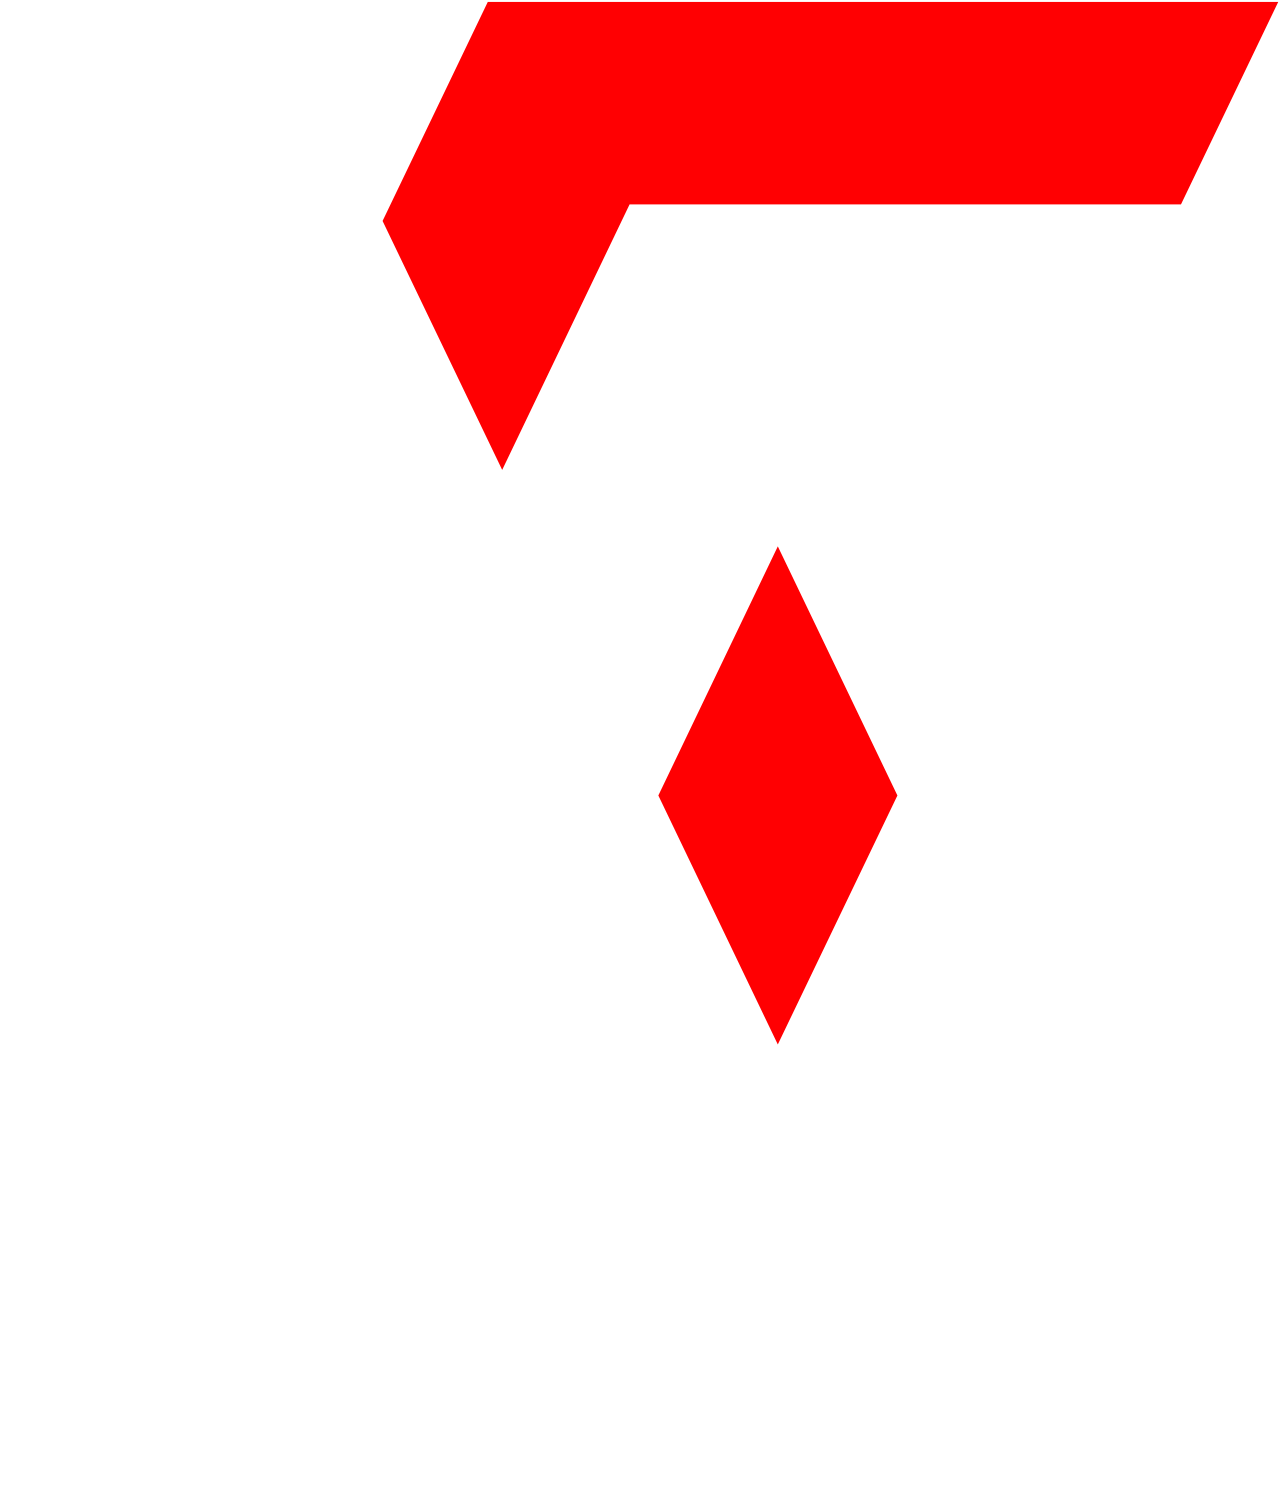 Tanzz's web page